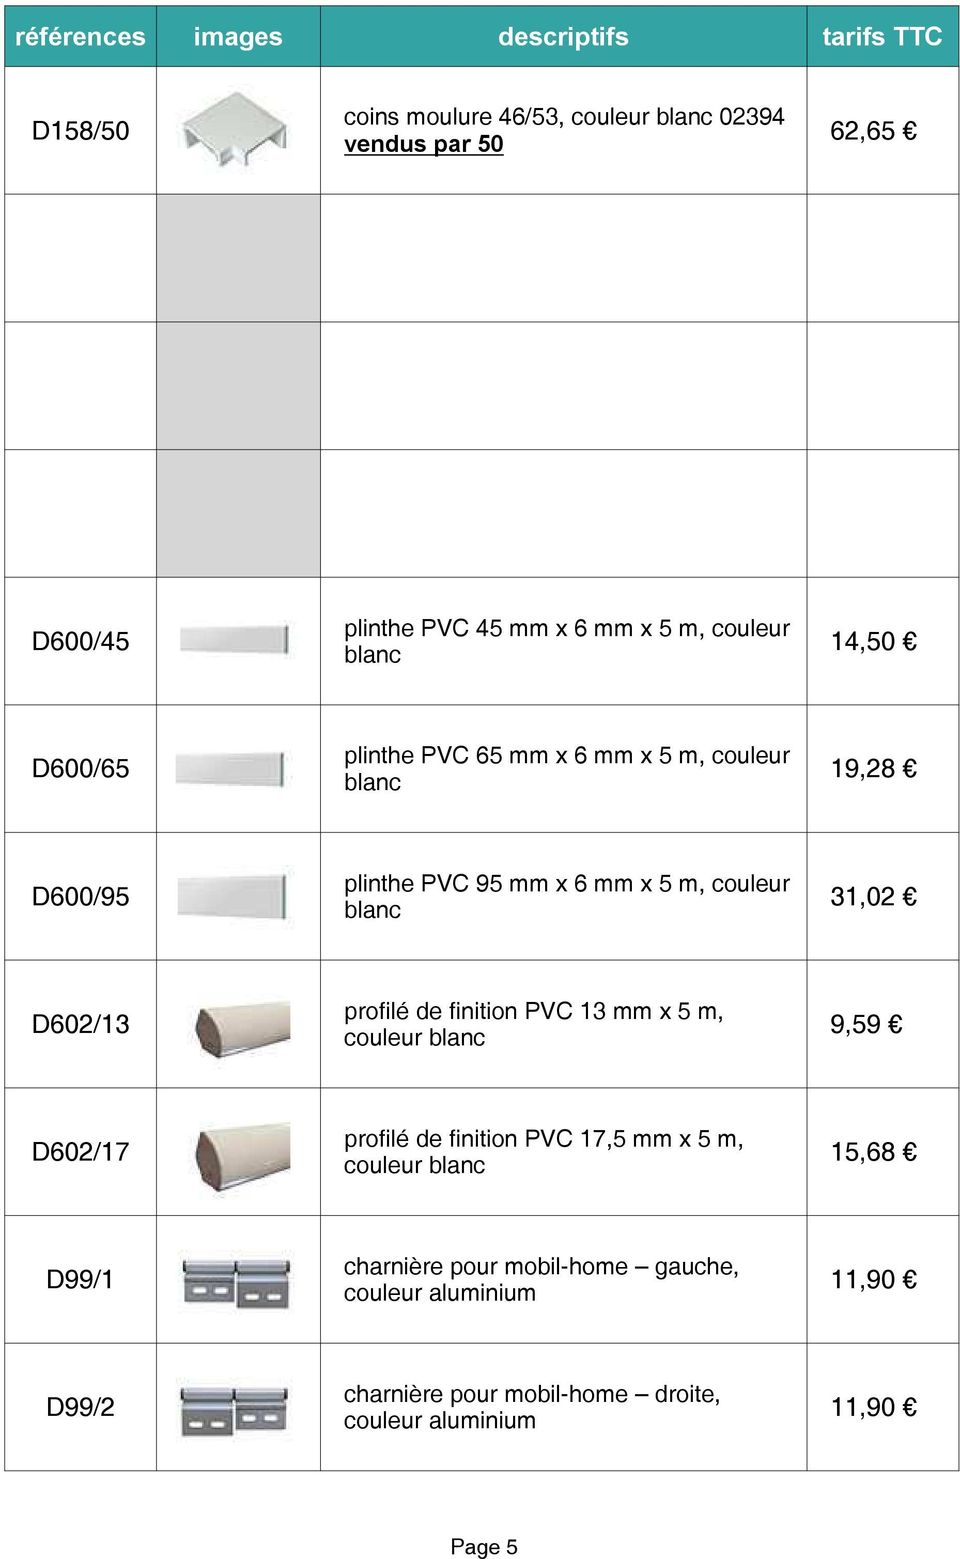 finition PVC 13 mm x 5 m, D602/13 9,59 couleur profilé de finition PVC 17,5 mm x 5 m, D602/17 15,68 couleur charnière